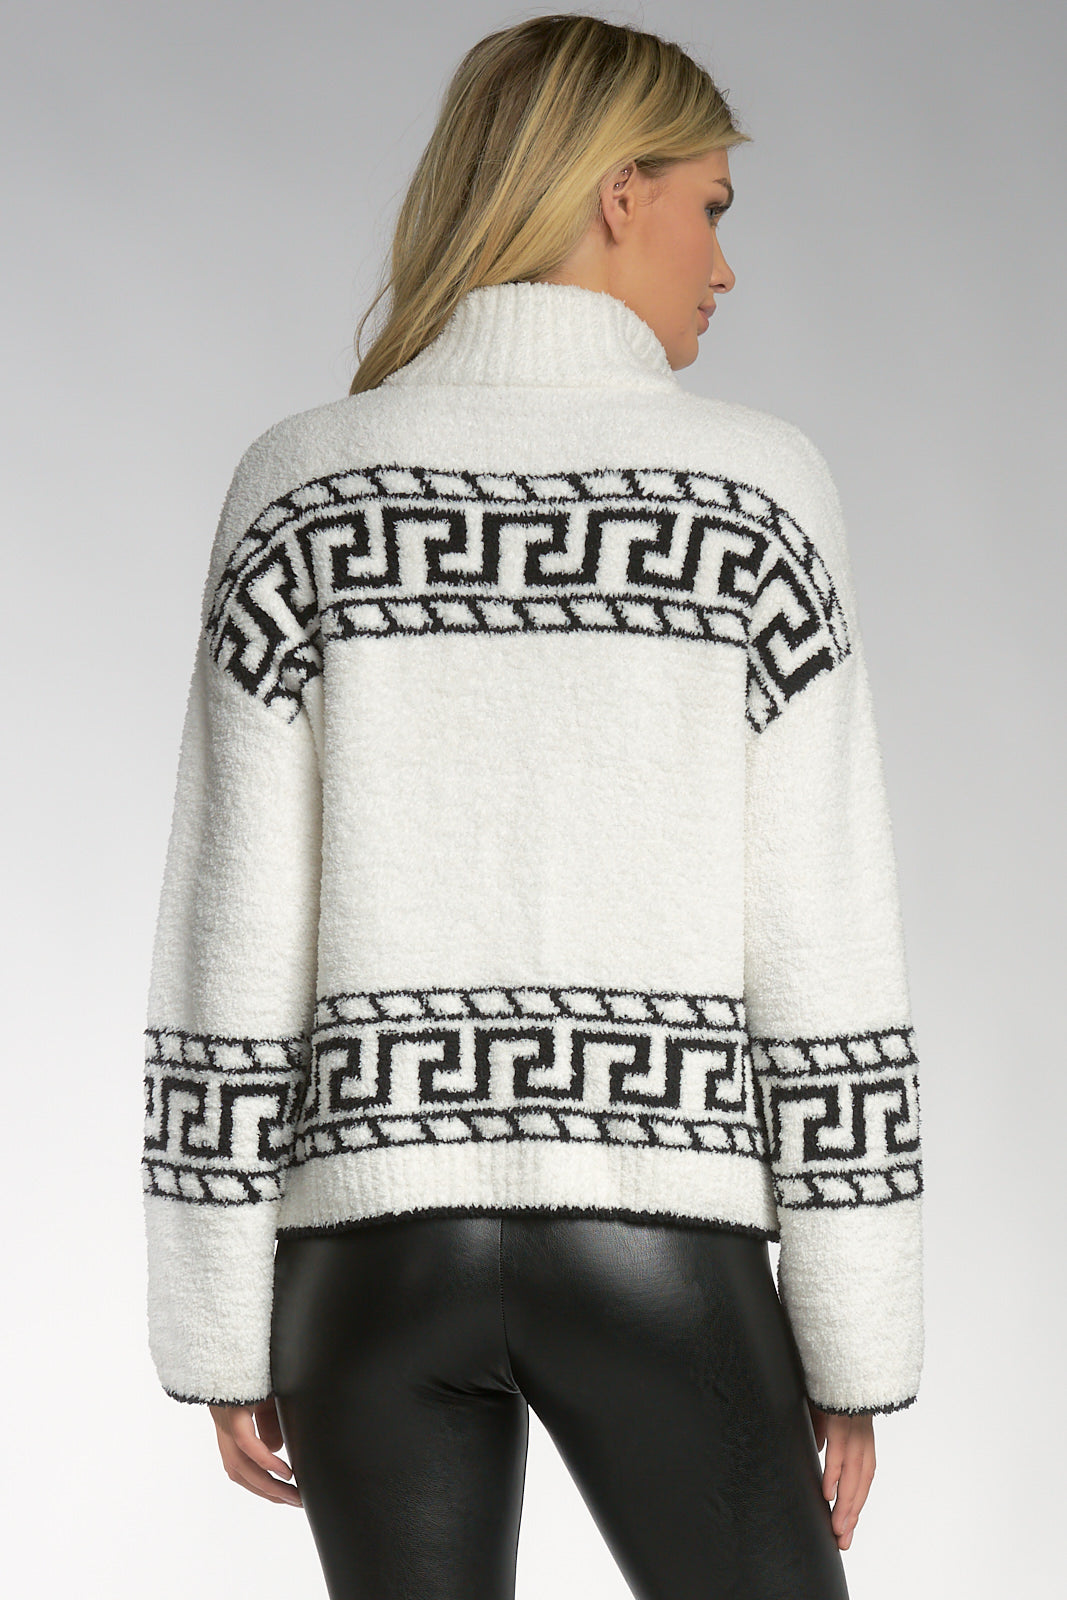 Elan Off White and Black 3/4 Zip Sweater